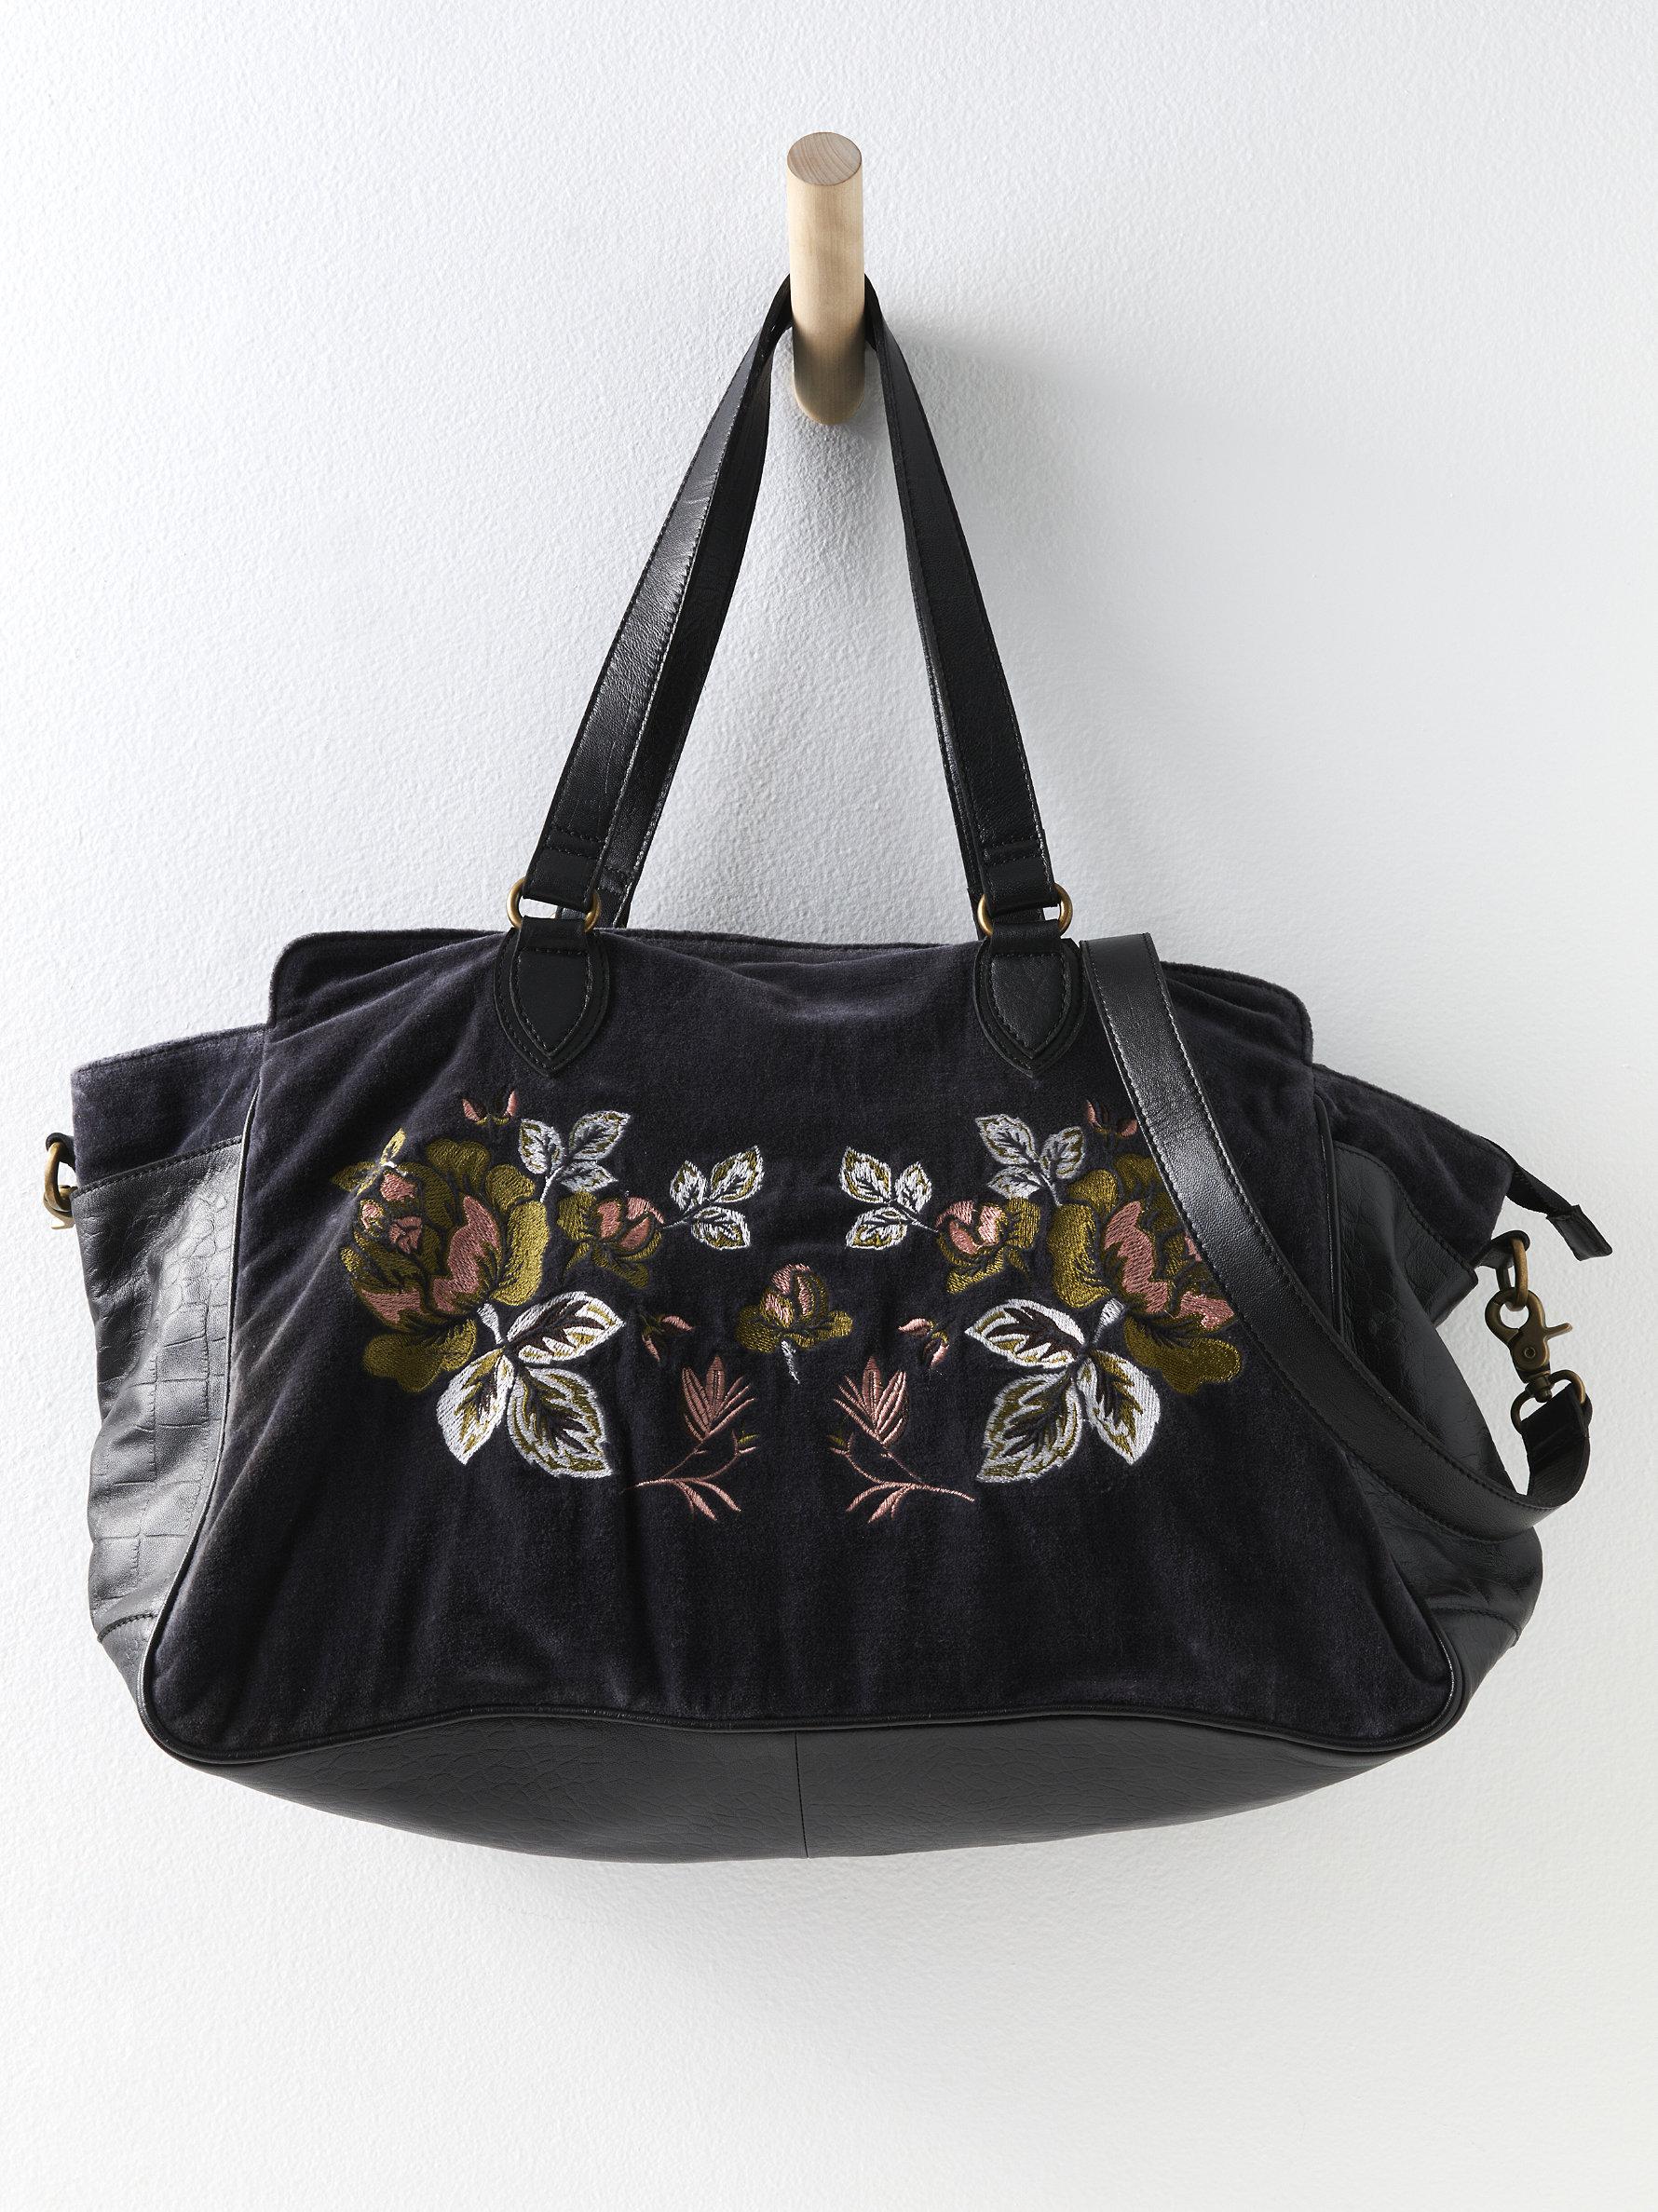 Blue & White Duchess crossbody handbag - Brushed Gold hardware | Cushette